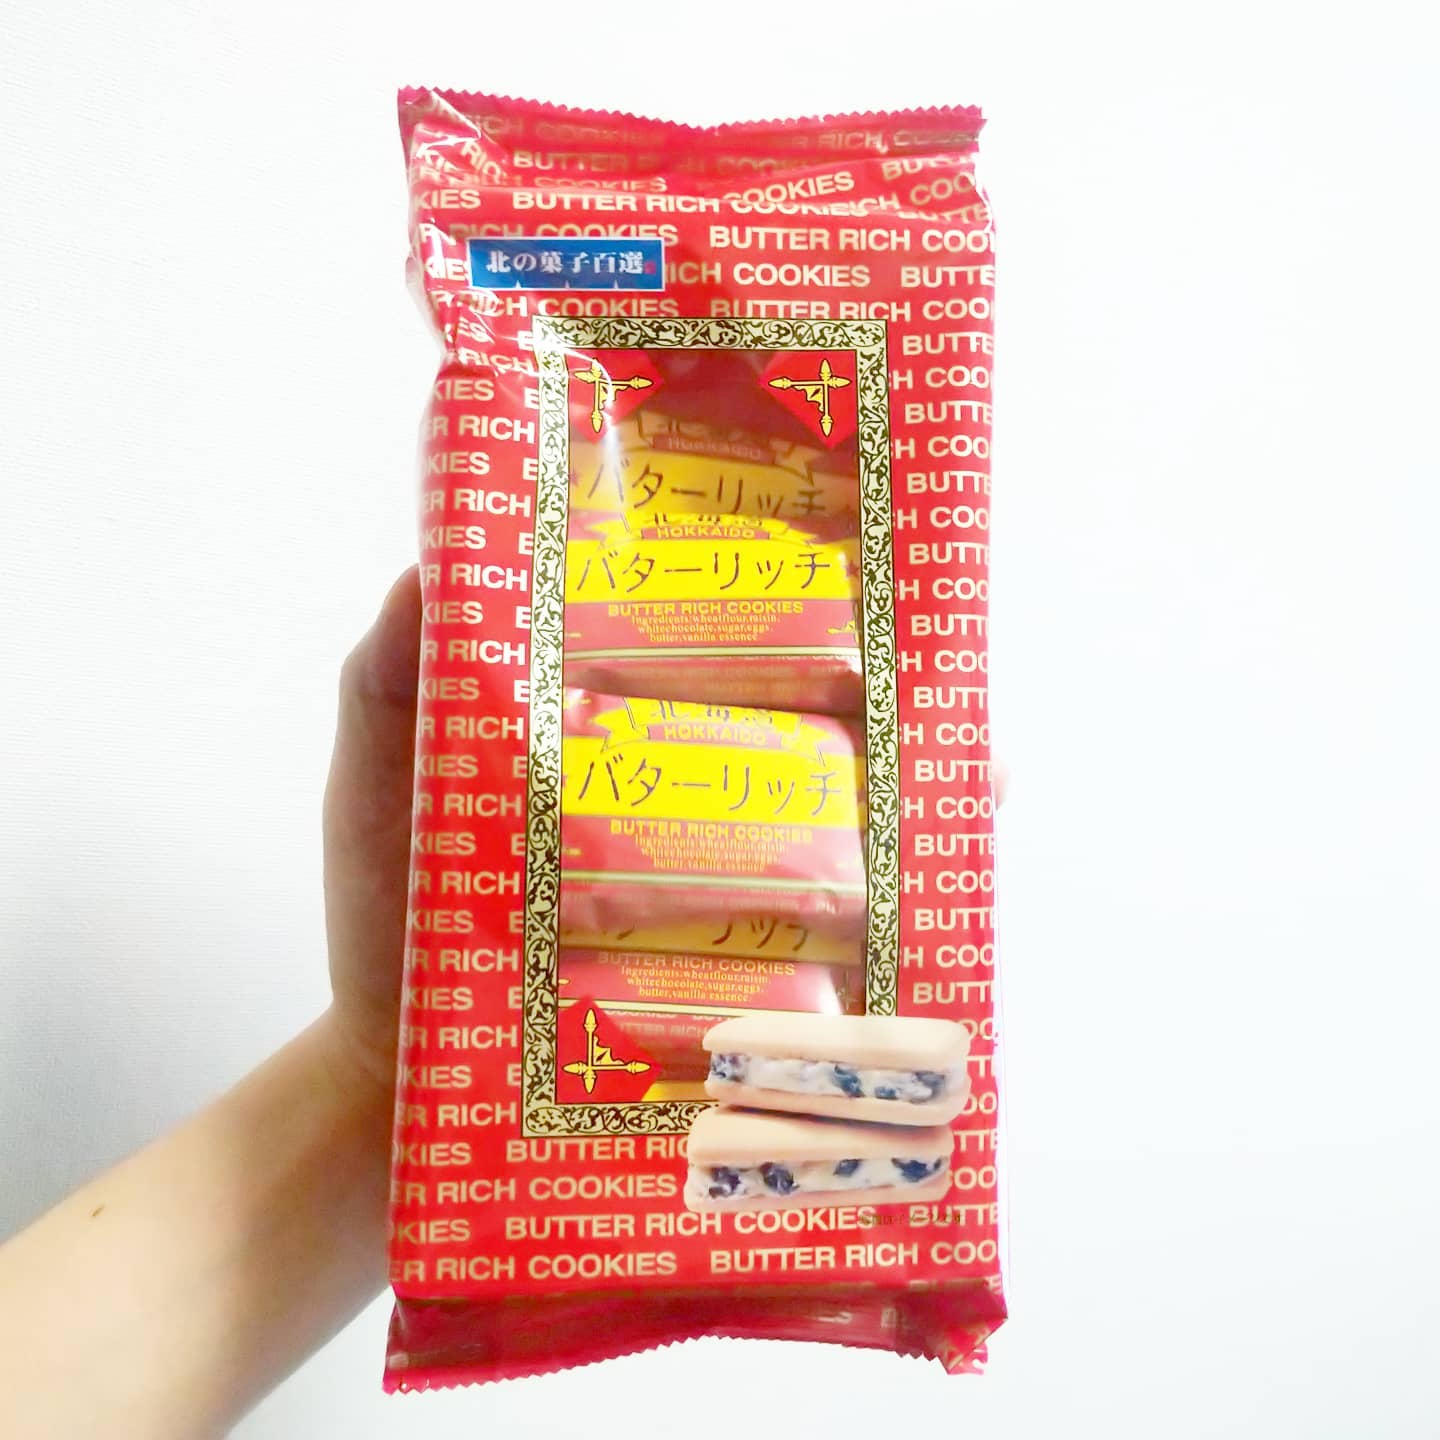 #北海道バターリッチ #侍猫度☆☆☆☆★ きな粉風味的な香ばしさがあるやつだね。六花亭のとはちょいと違う、これはこれで美味い。武蔵小山のオオゼキで北海道フェアやってるよ